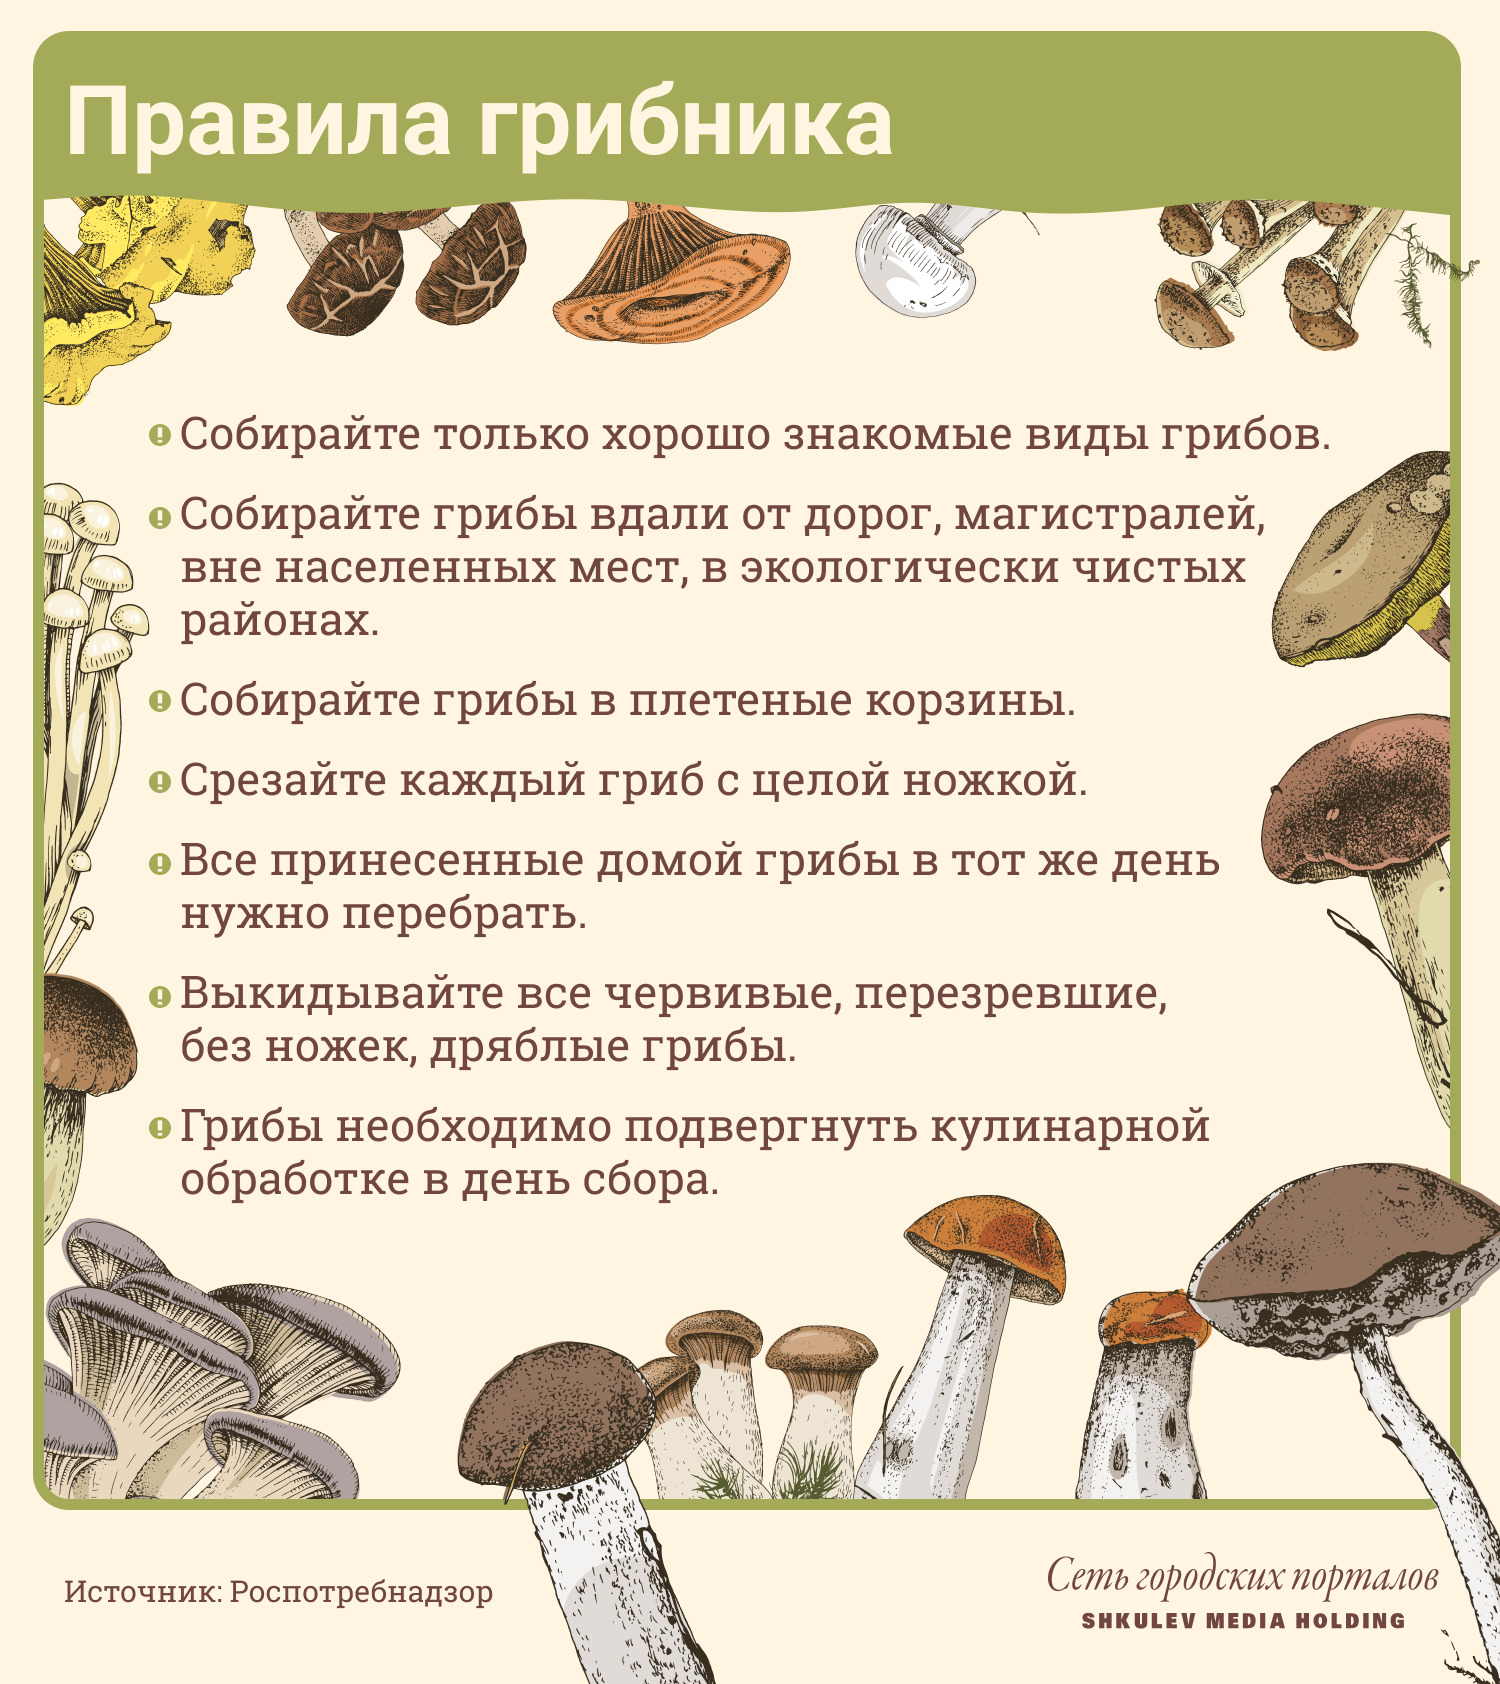 Роспотребнадзор рекомендует соблюдать эти простые правила, когда будете собирать грибы самостоятельно